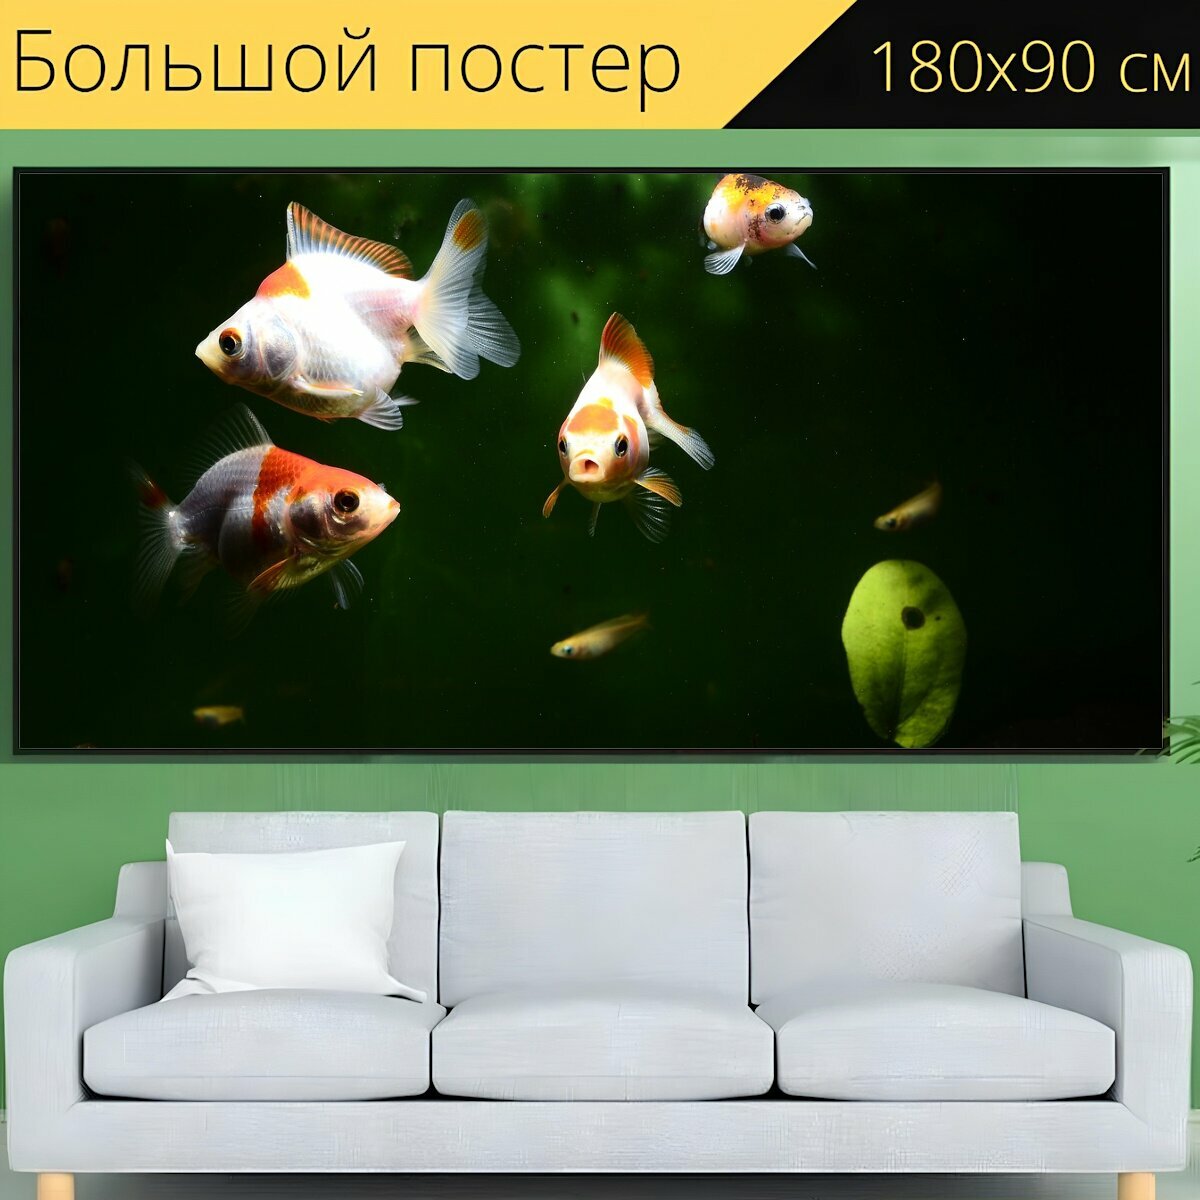 Большой постер "Золотая рыбка, рыба, аквариум" 180 x 90 см. для интерьера